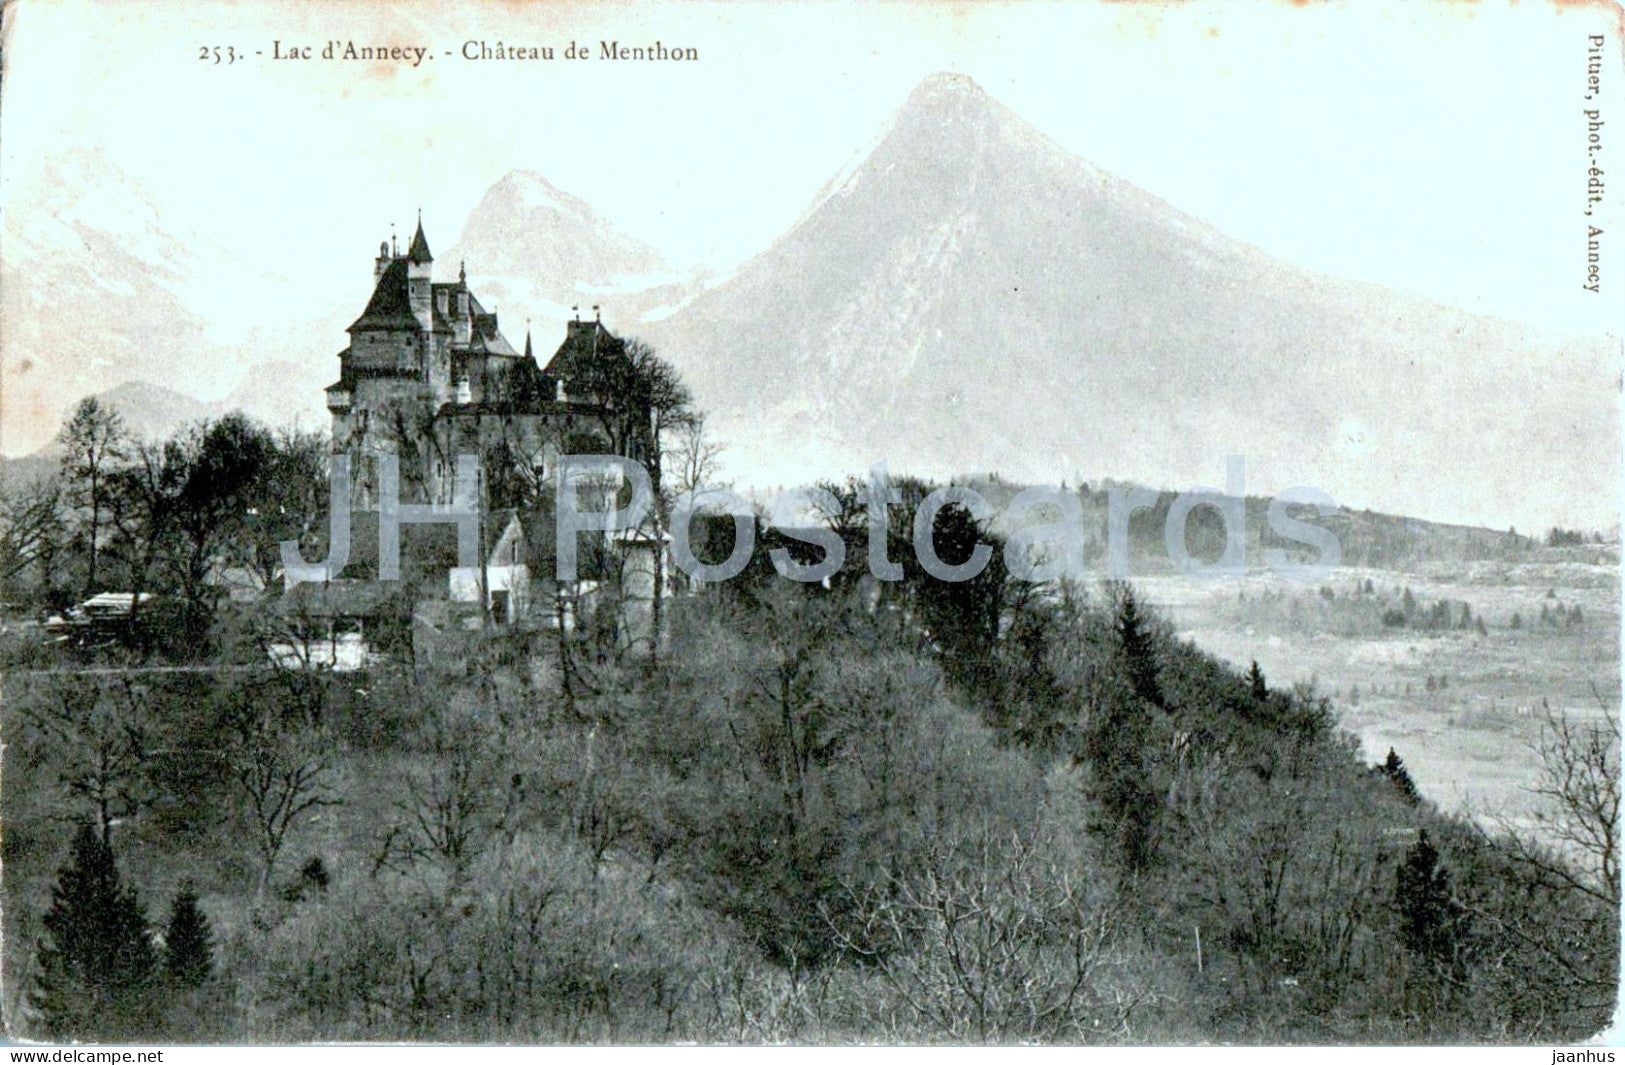 Lac d'Annecy - Chateau de Menthon - castle - 253 - old postcard - France - unused - JH Postcards